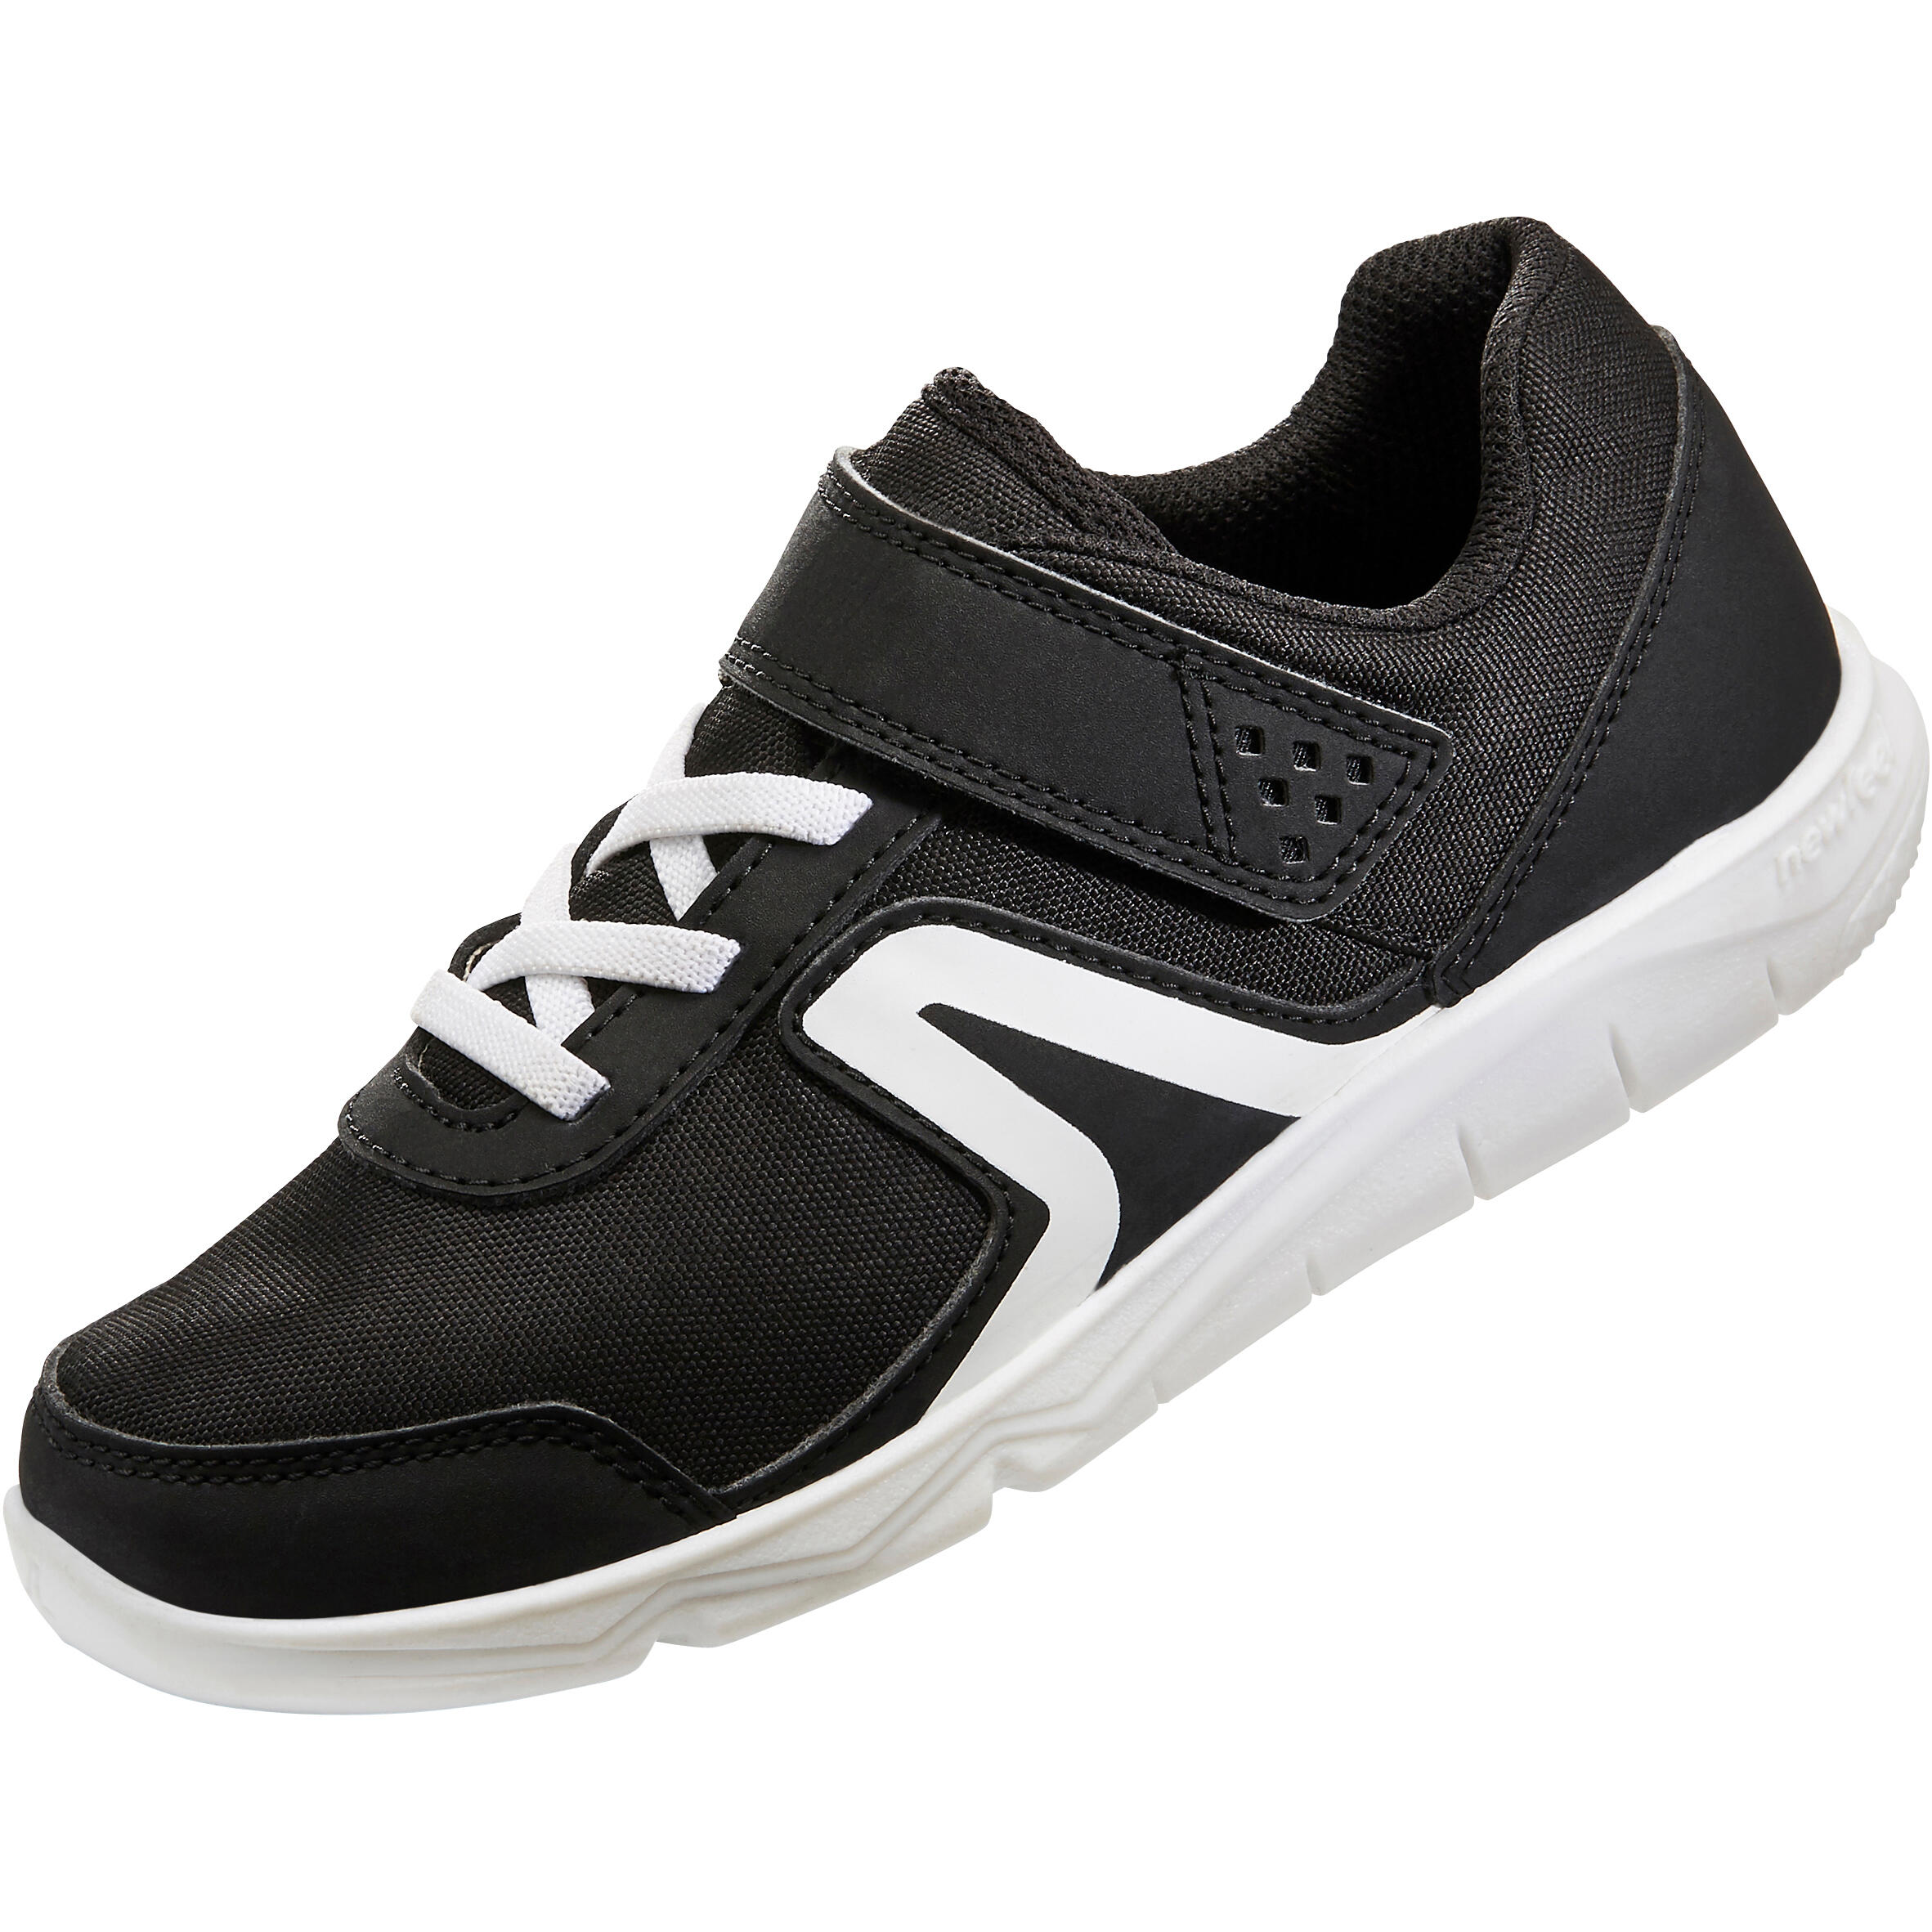 VTO Black - Men's Velcro Walking Shoe | SAS Shoes